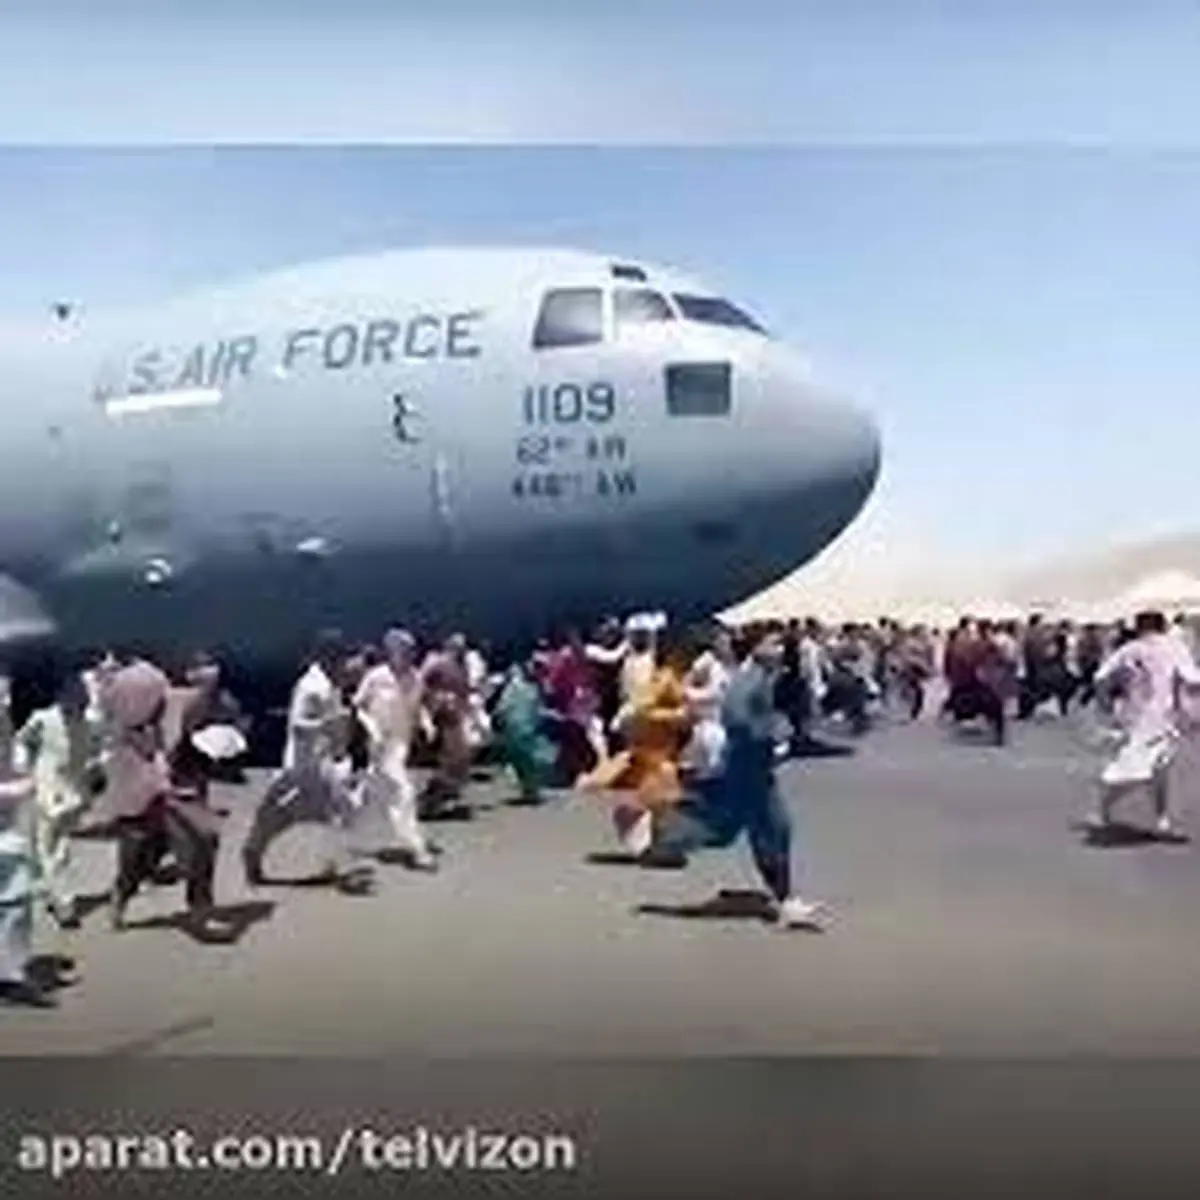 اولین فیلم از سقوط افغان ها از هواپیمای آمریکایی + فیلم سقوط افغان ها